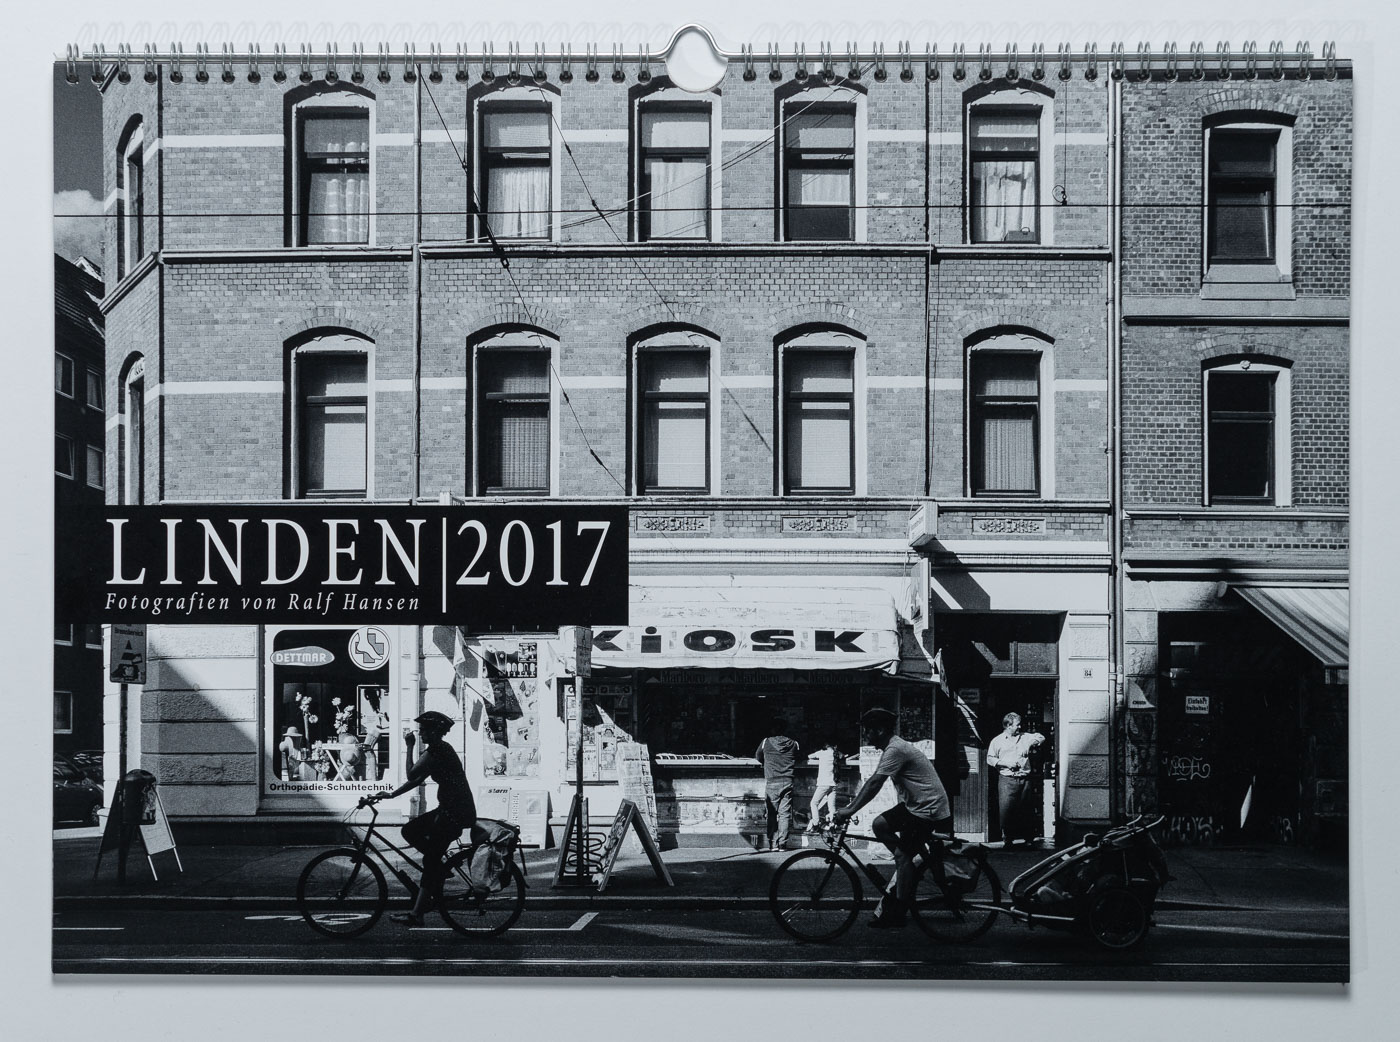 Lindenkalender LINDEN 2017